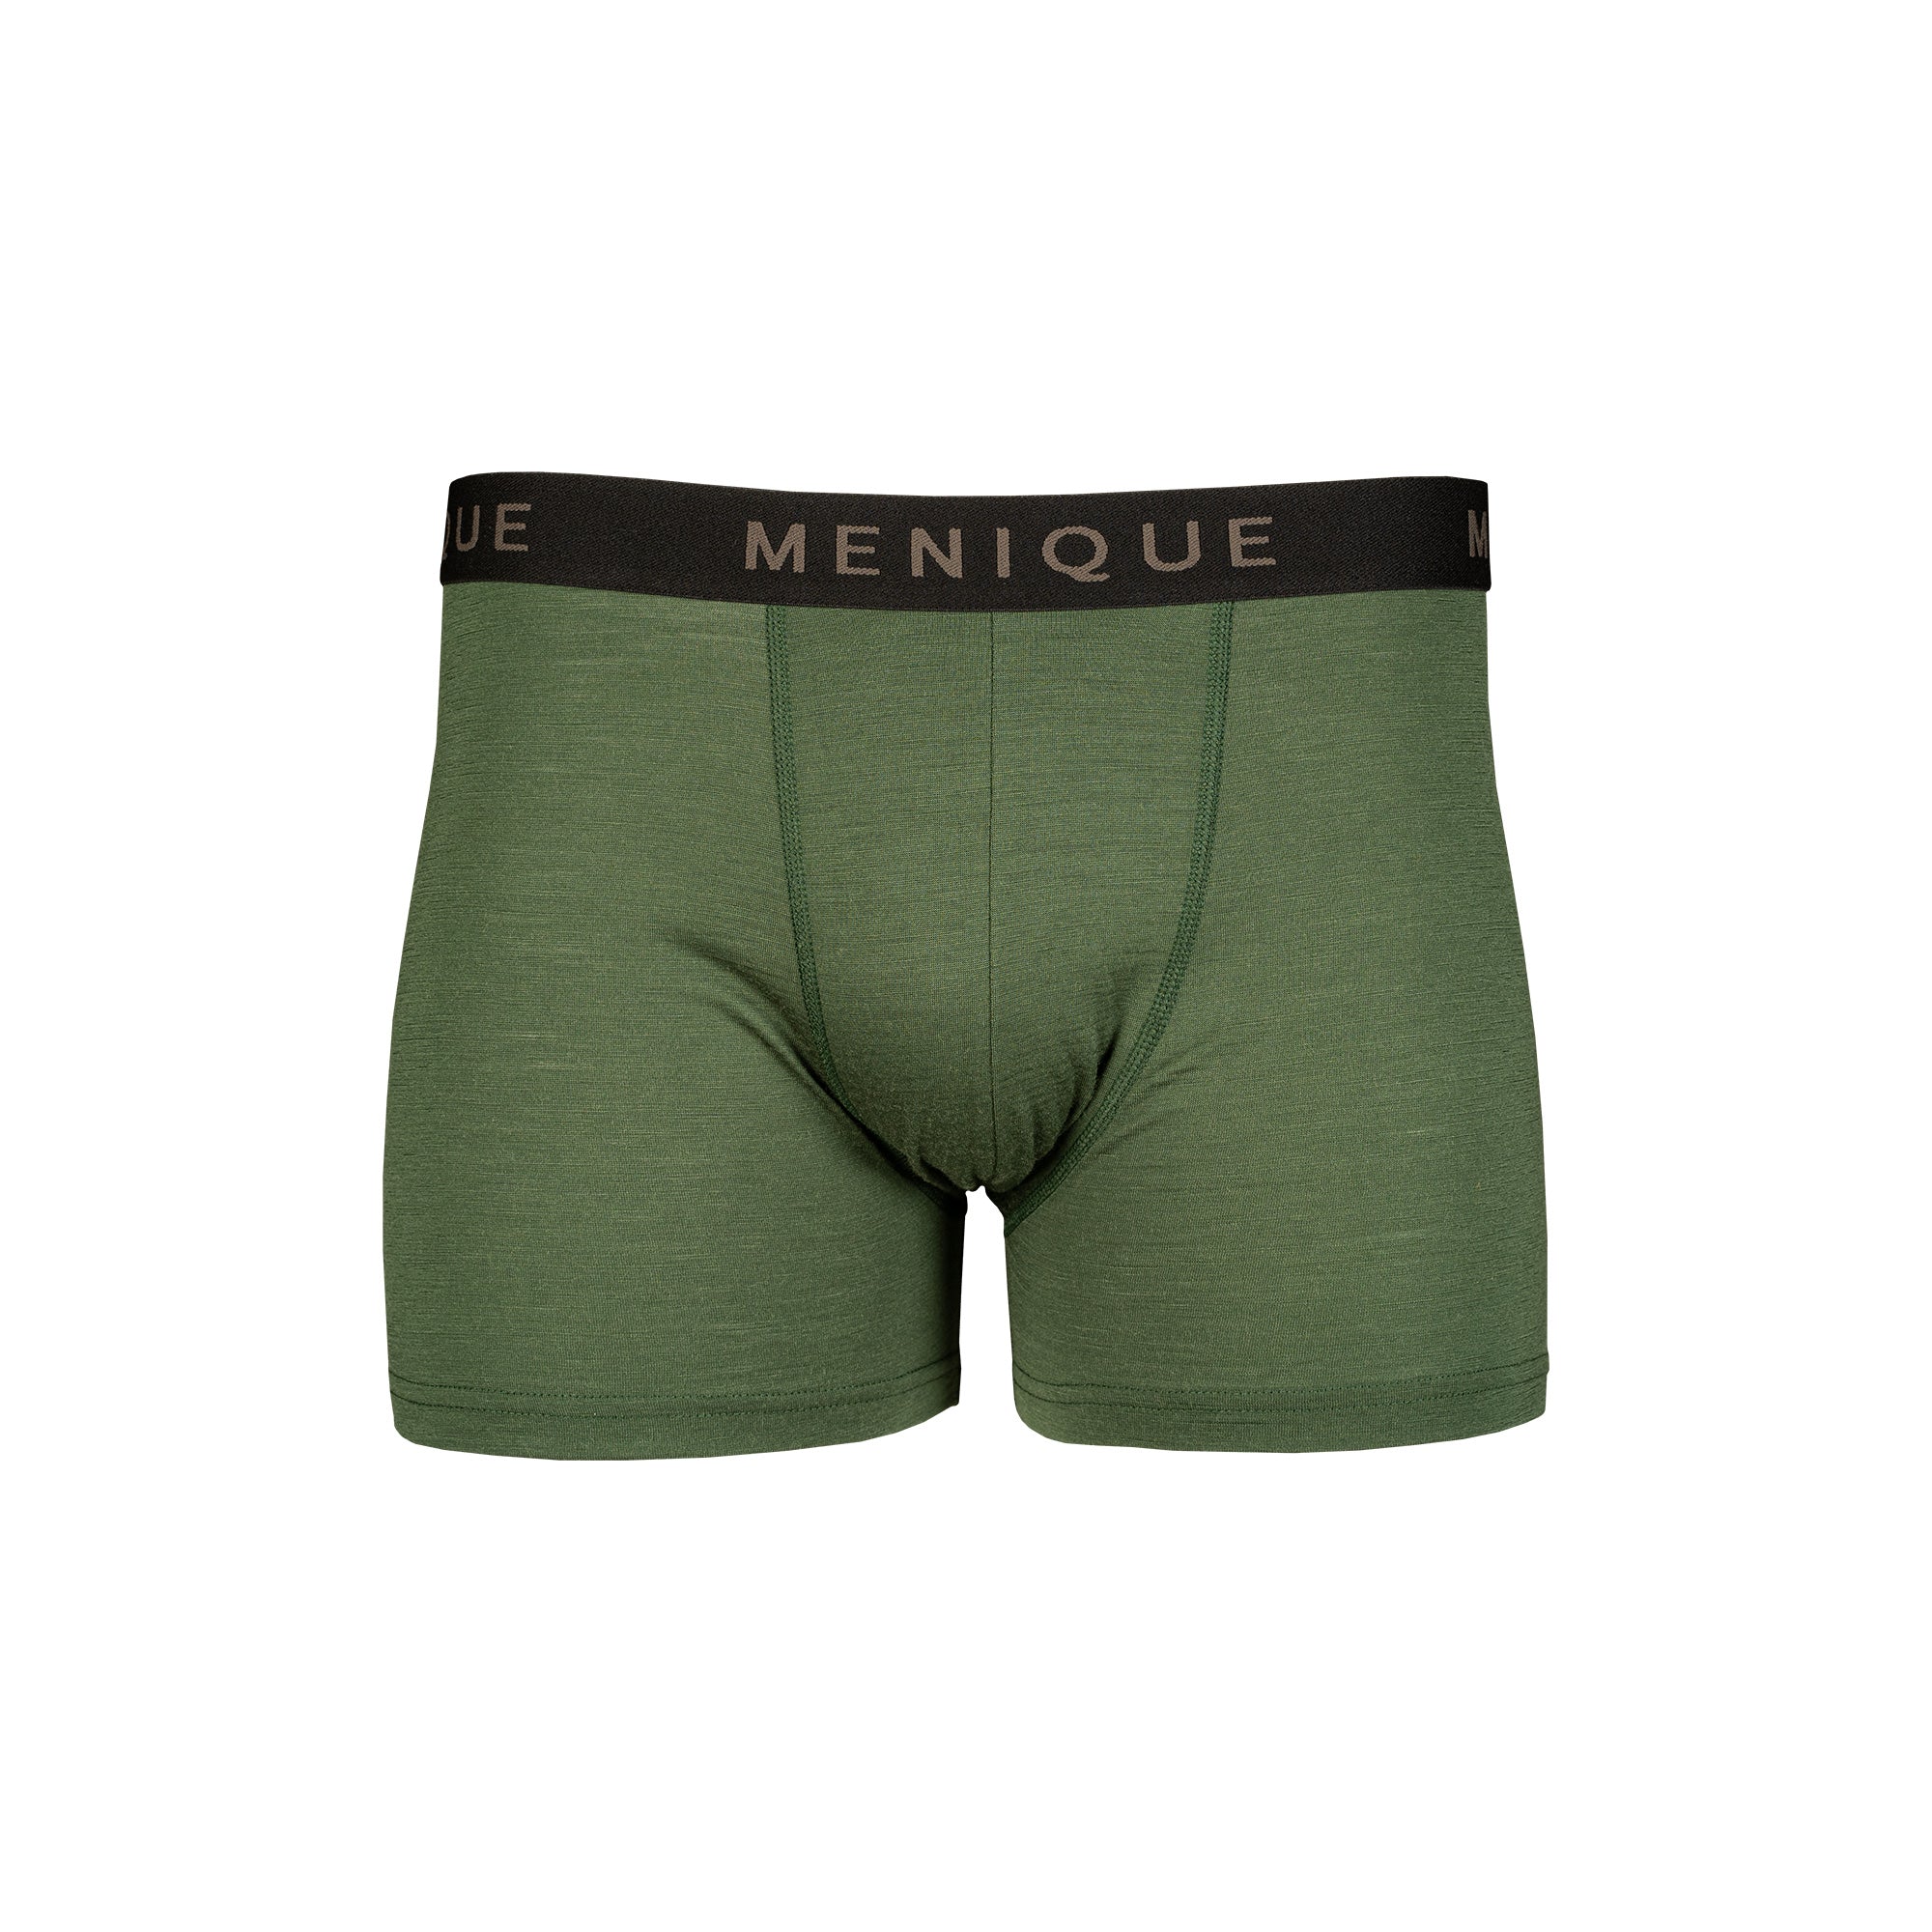 Men's Underwear Boxer Shorts 3-Pack ❤️ menique